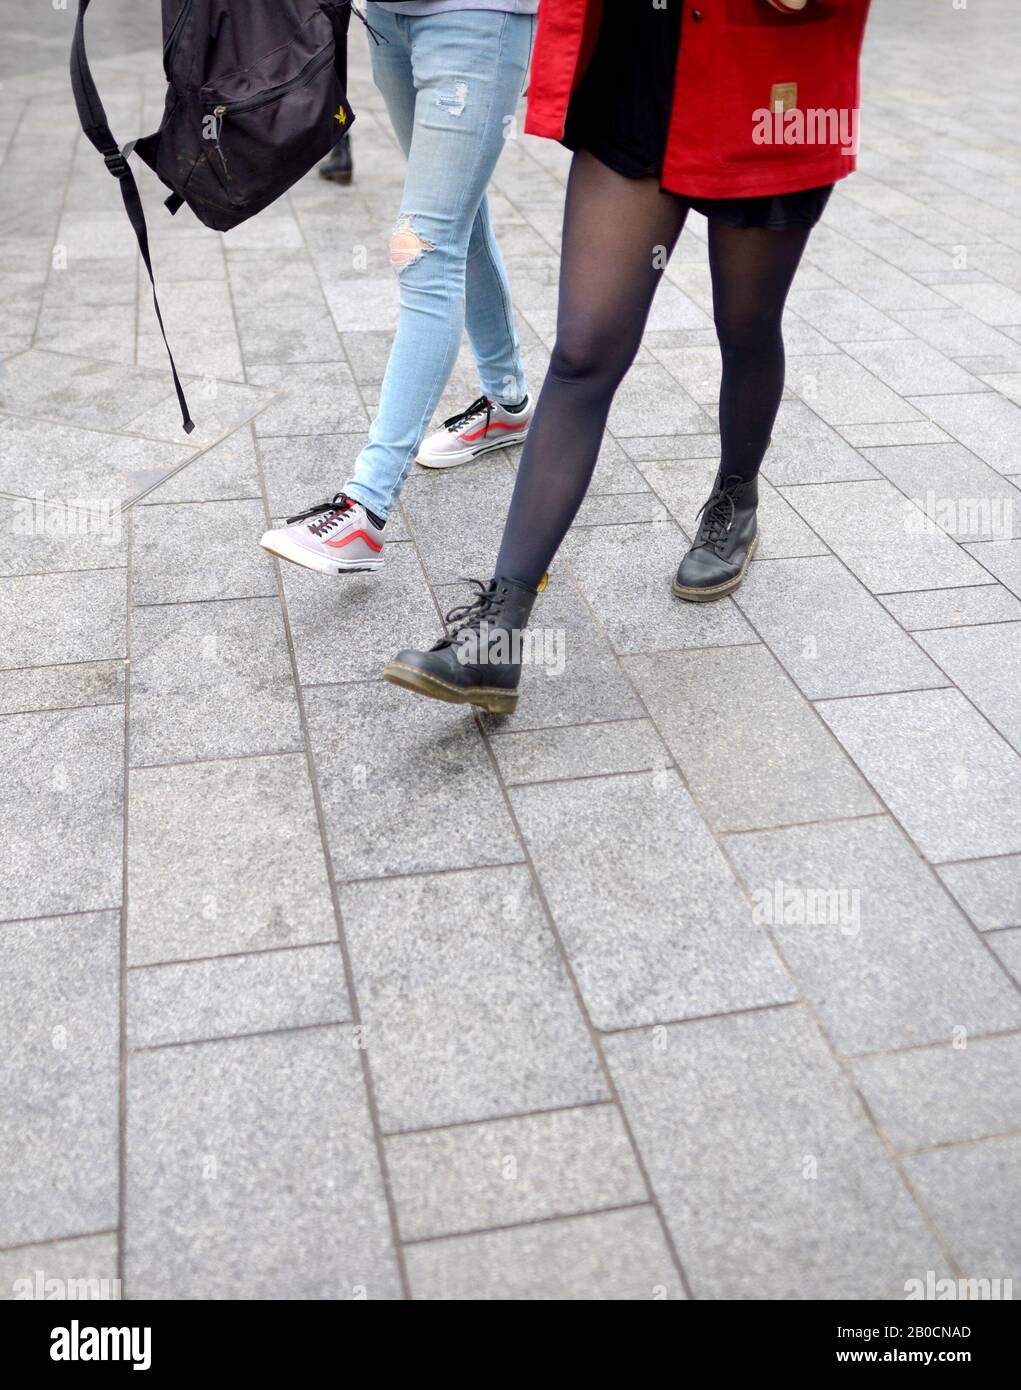 London, England, Großbritannien. Zwei junge Frauen gehen - eine Hose, eine  in Strumpfhosen Stockfotografie - Alamy